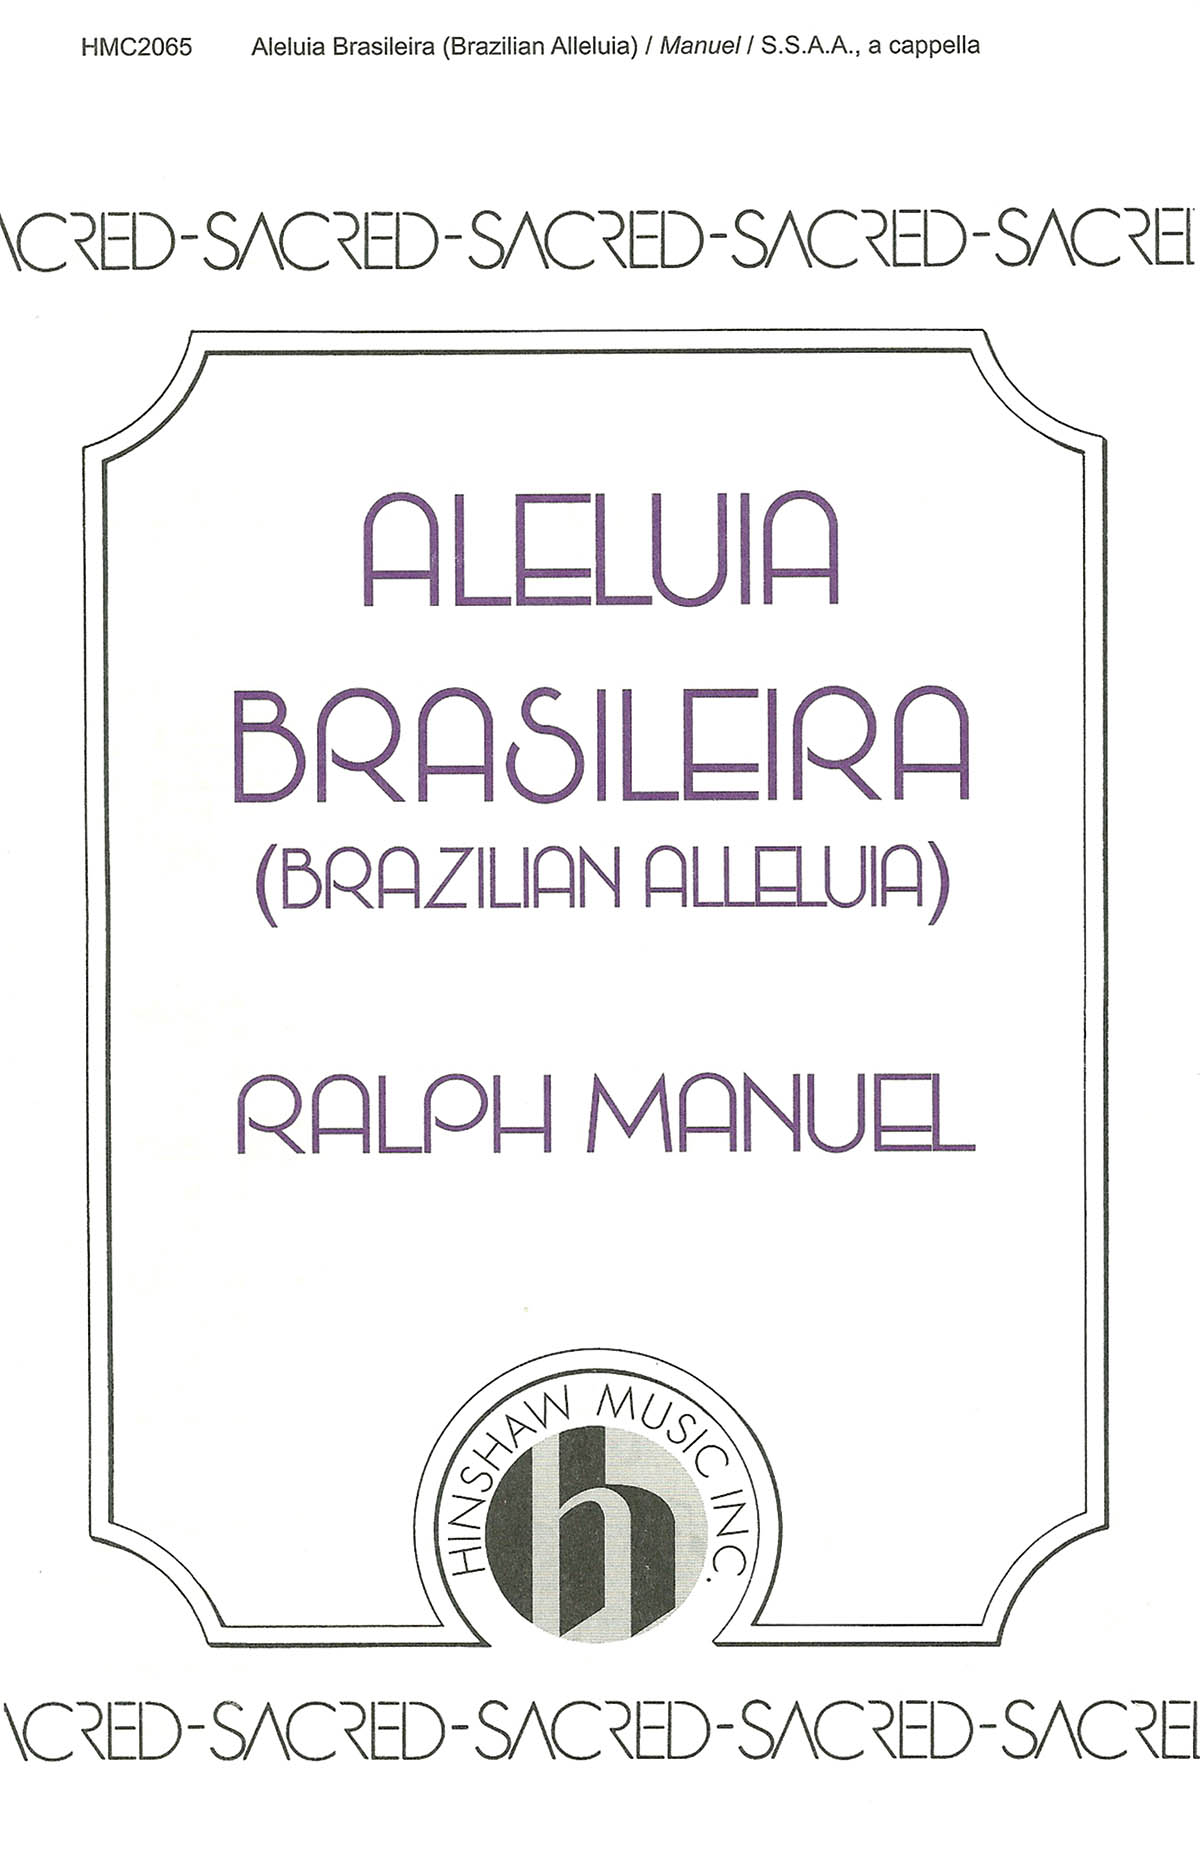 Ralph Manuel: Brazilian Alleluia (Aleluia Brasileira): SSAA: Vocal Score